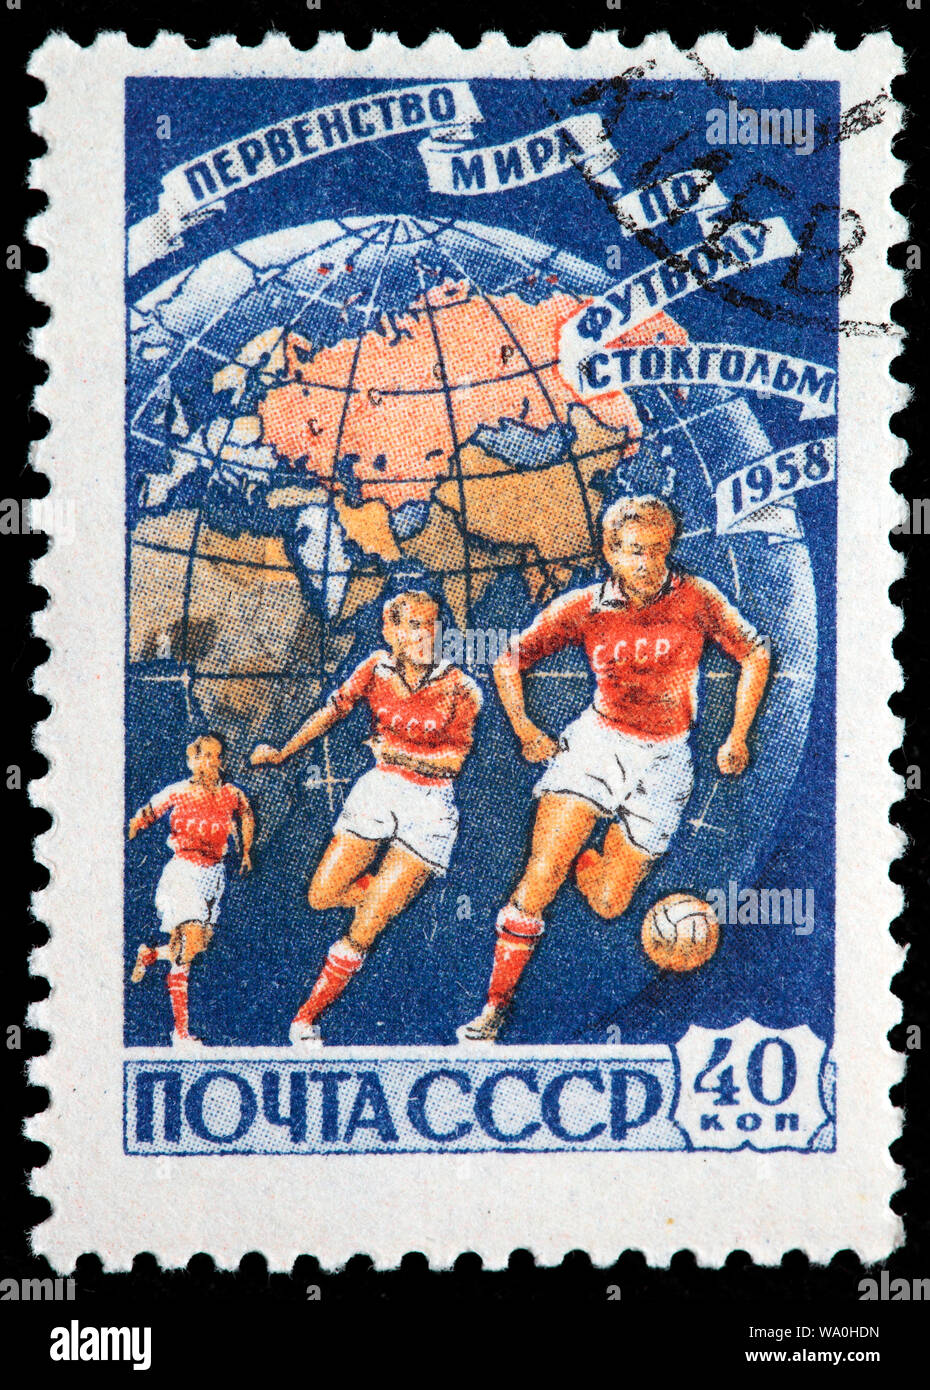 Coppa del Mondo di Calcio, Stoccolma, Svezia, francobollo, Russia, URSS, 1958 Foto Stock